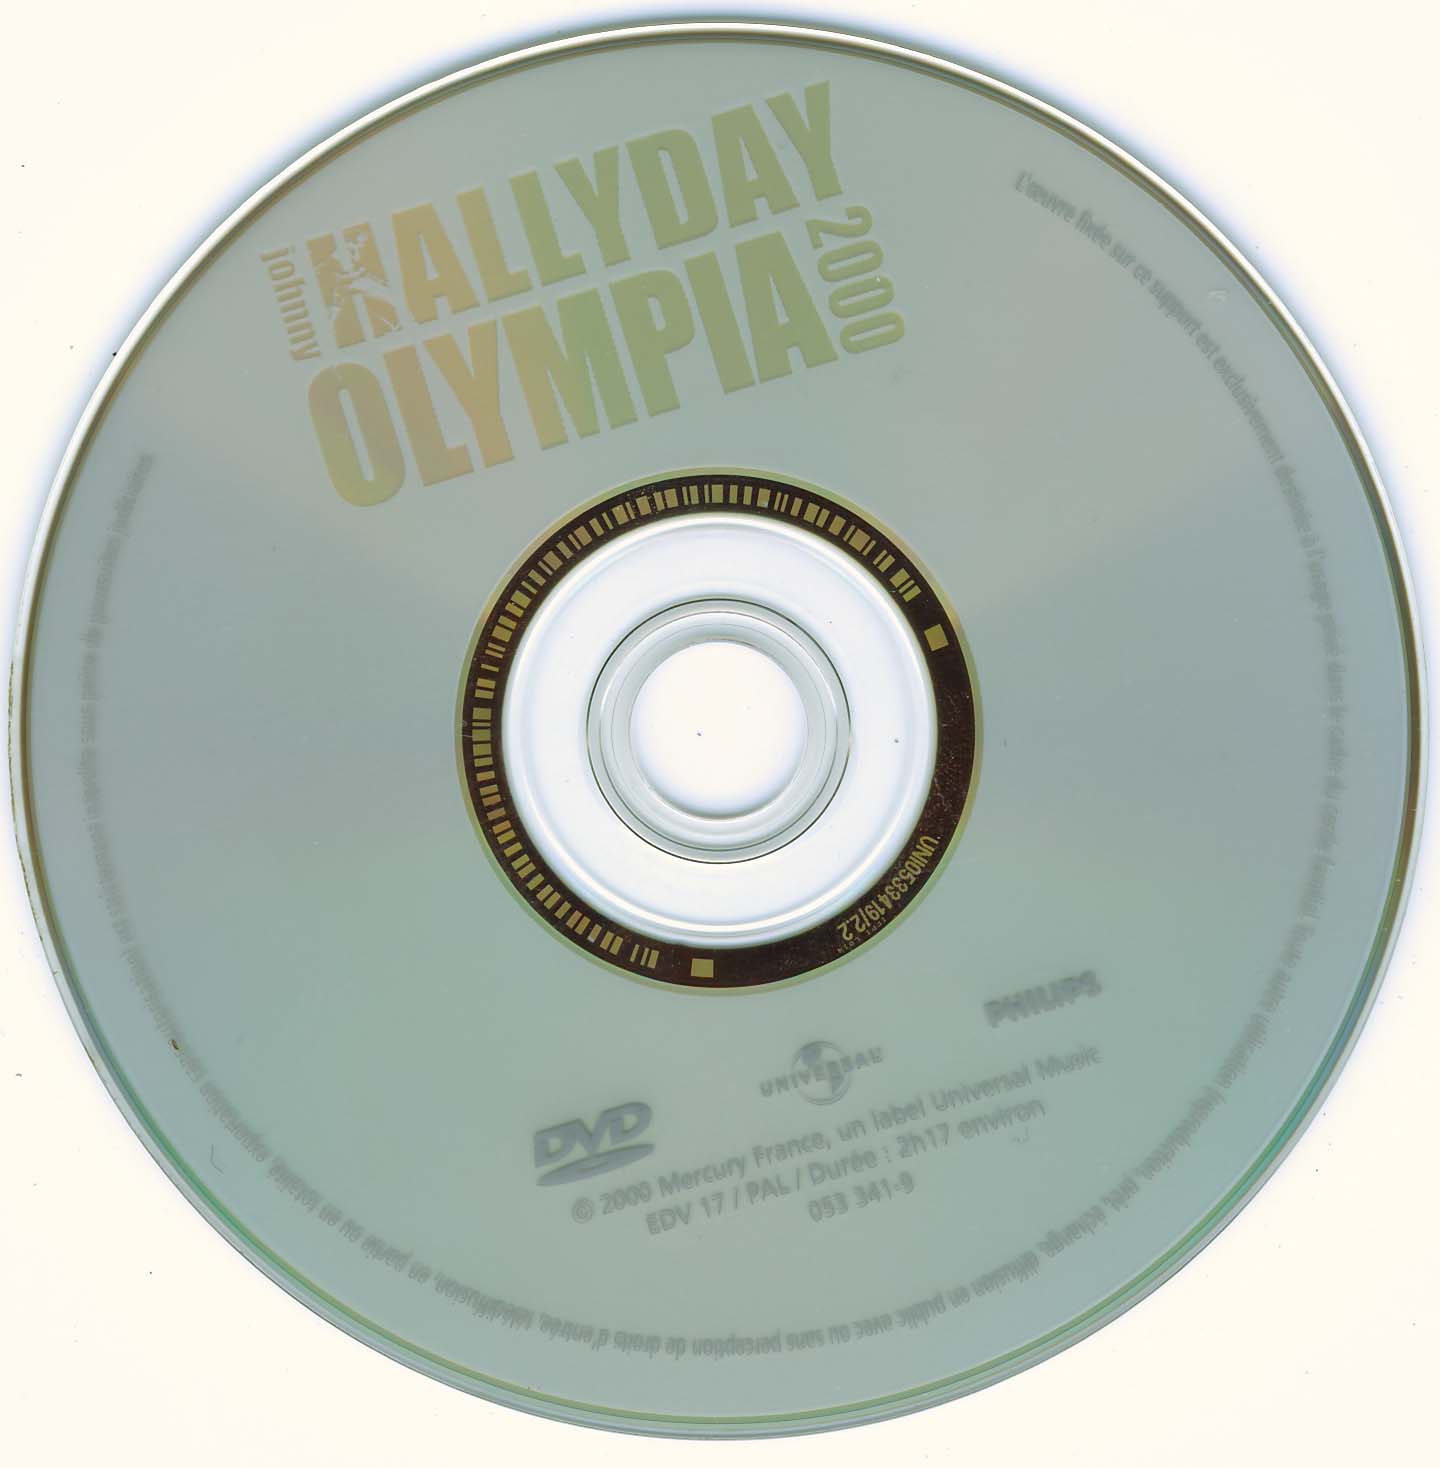 Johnny Hallyday Olympia 2000